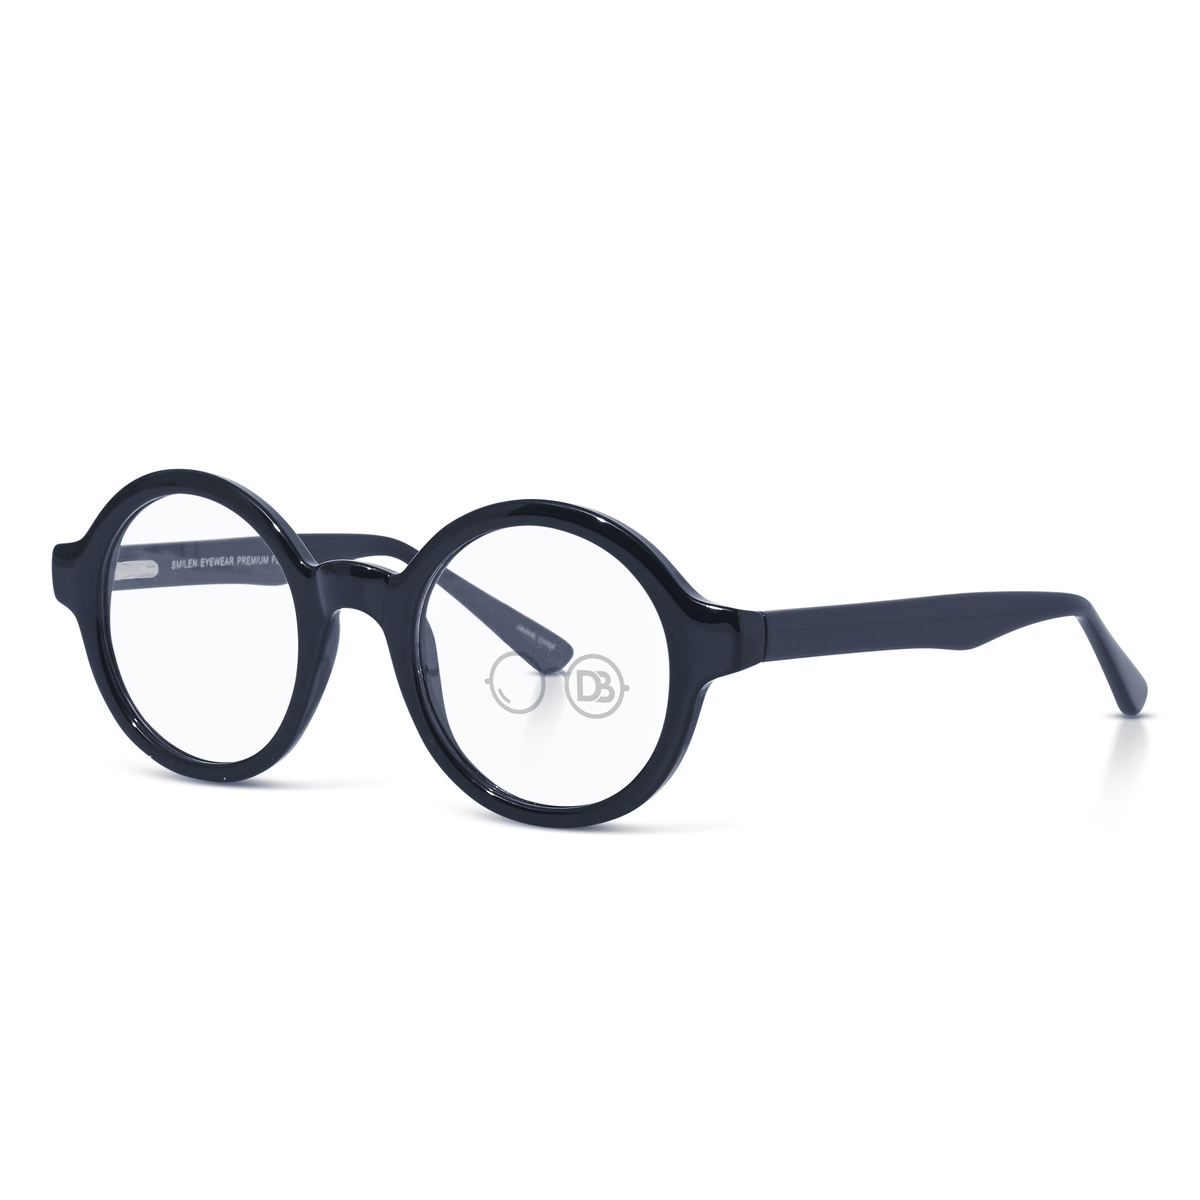 Round Optical Quality Reading Glasses- Genius